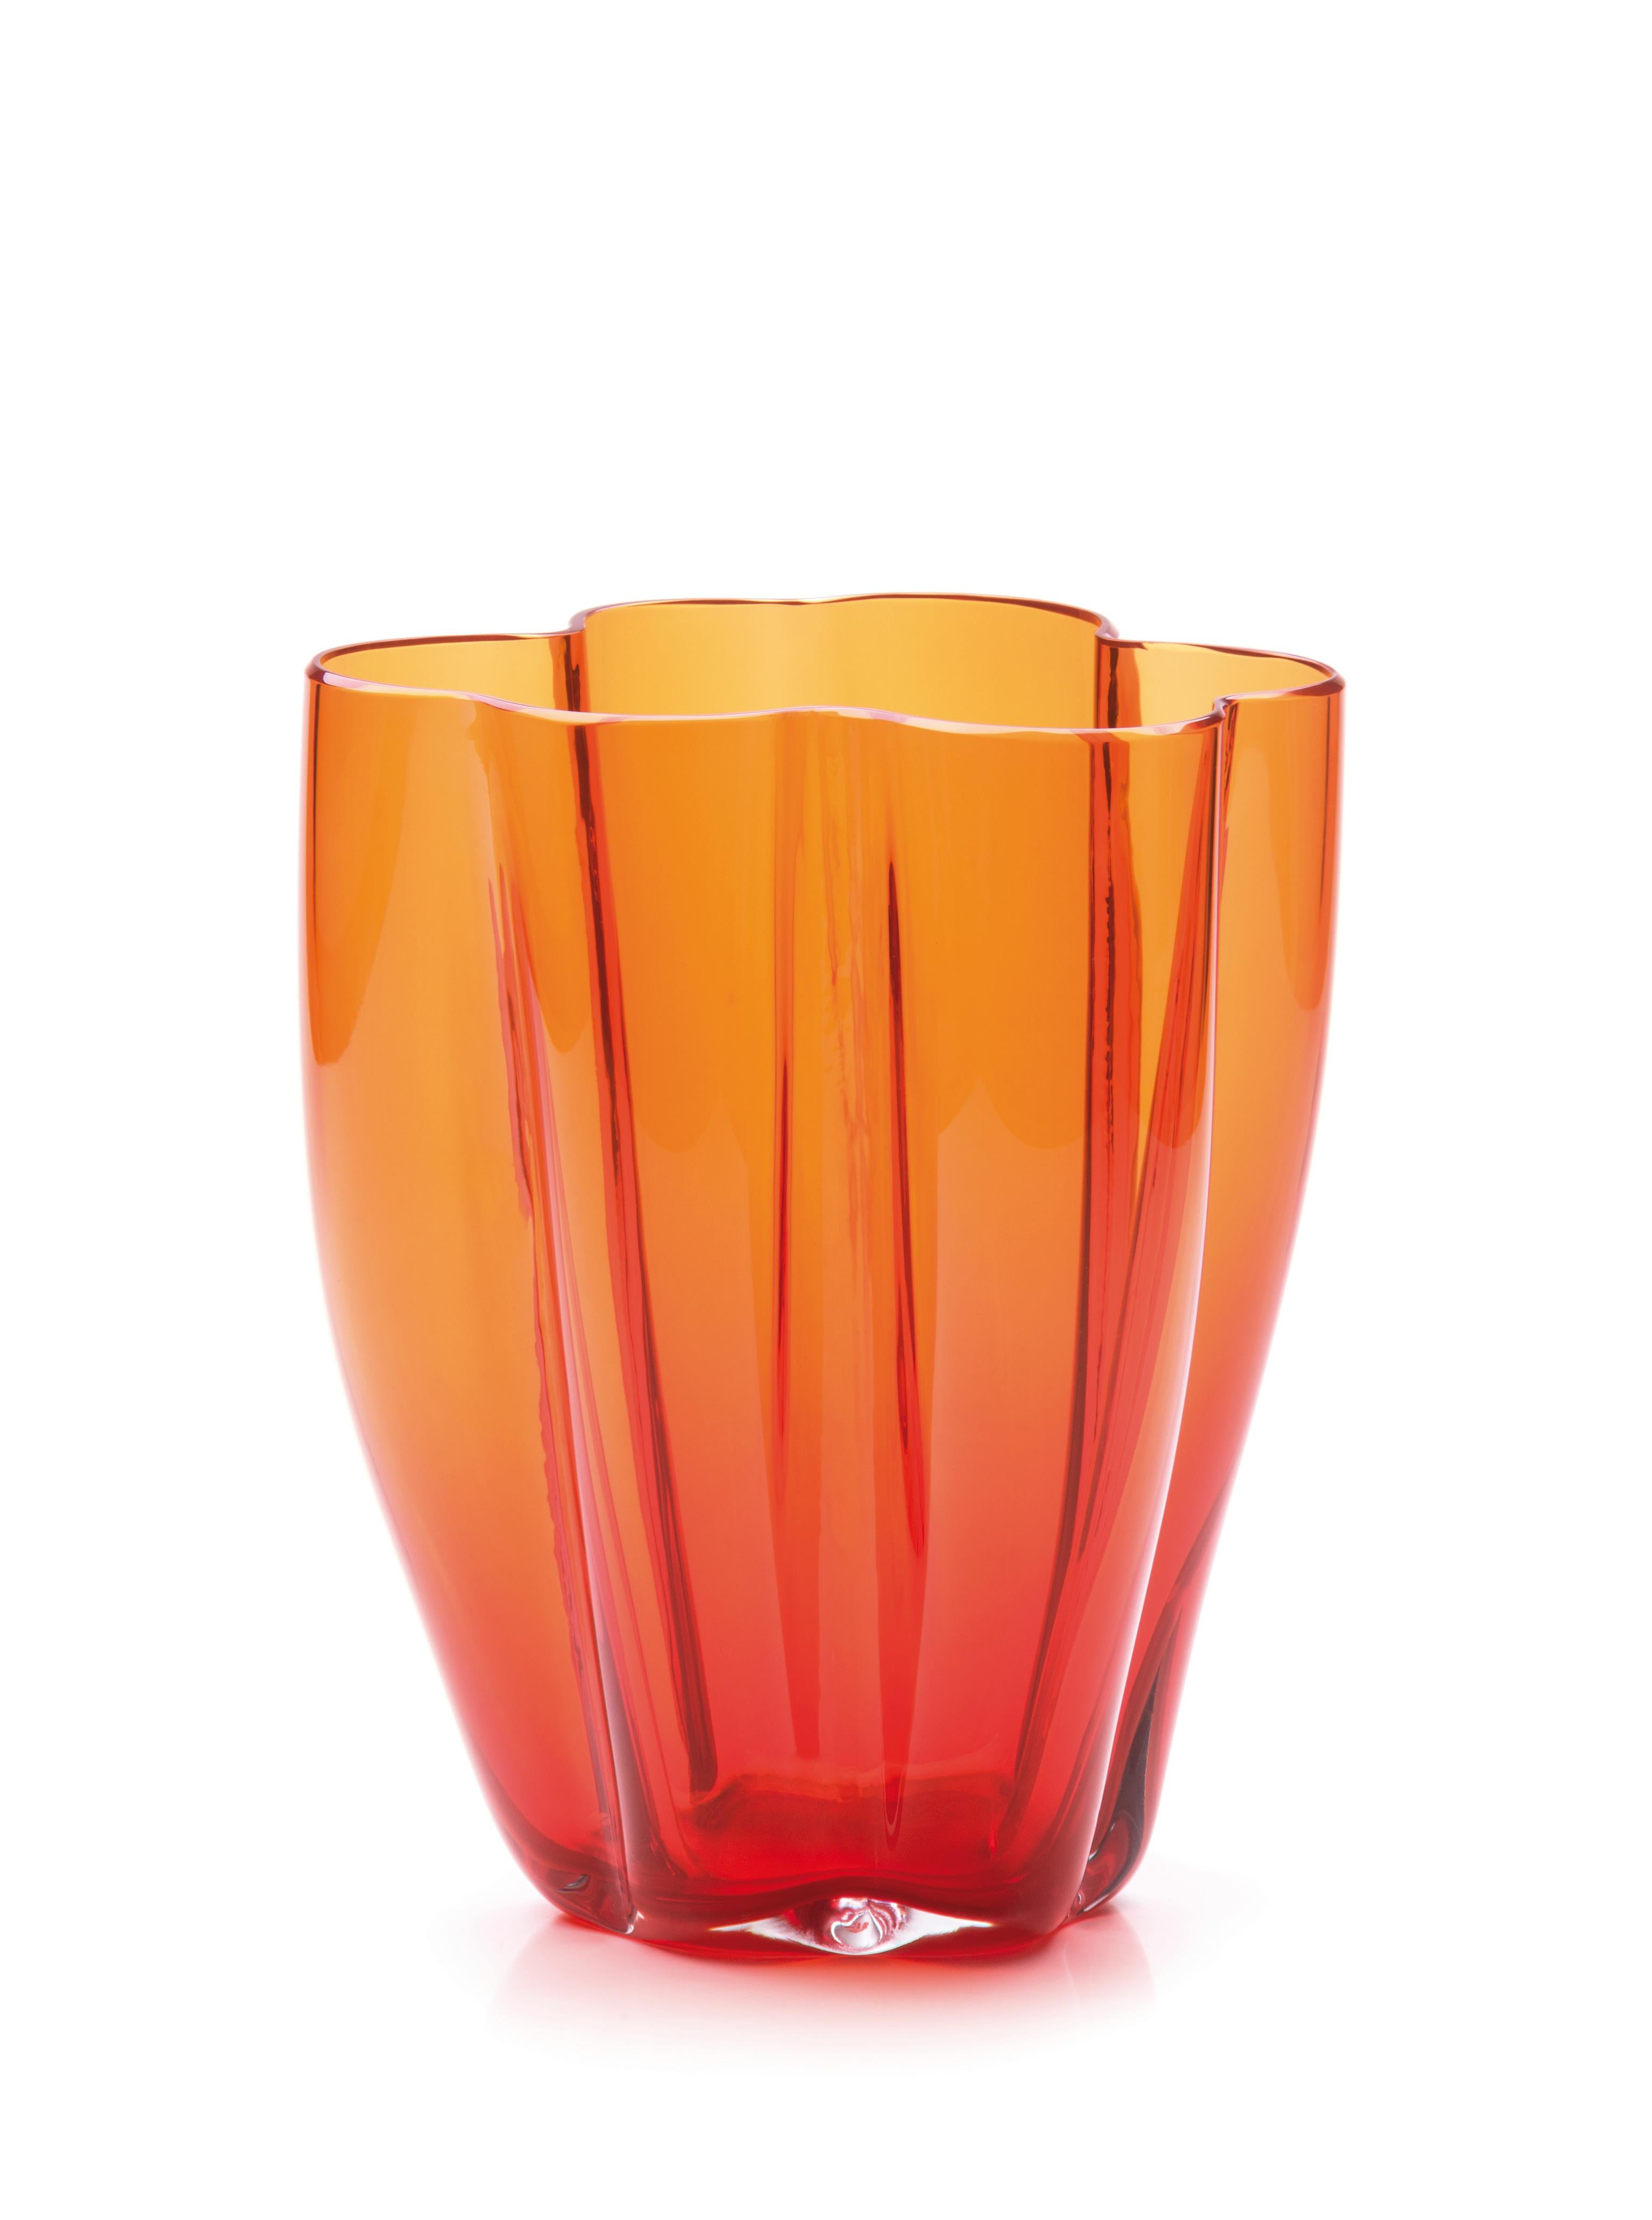 Grand vase Petalo Orange de Purho
Dimensions : D20 x H40 cm
Matériaux : Verre
D'autres couleurs et dimensions sont disponibles.

Purho est un nouveau protagoniste du design made in Italy, un travail de synthèse, une recherche qui dure depuis des